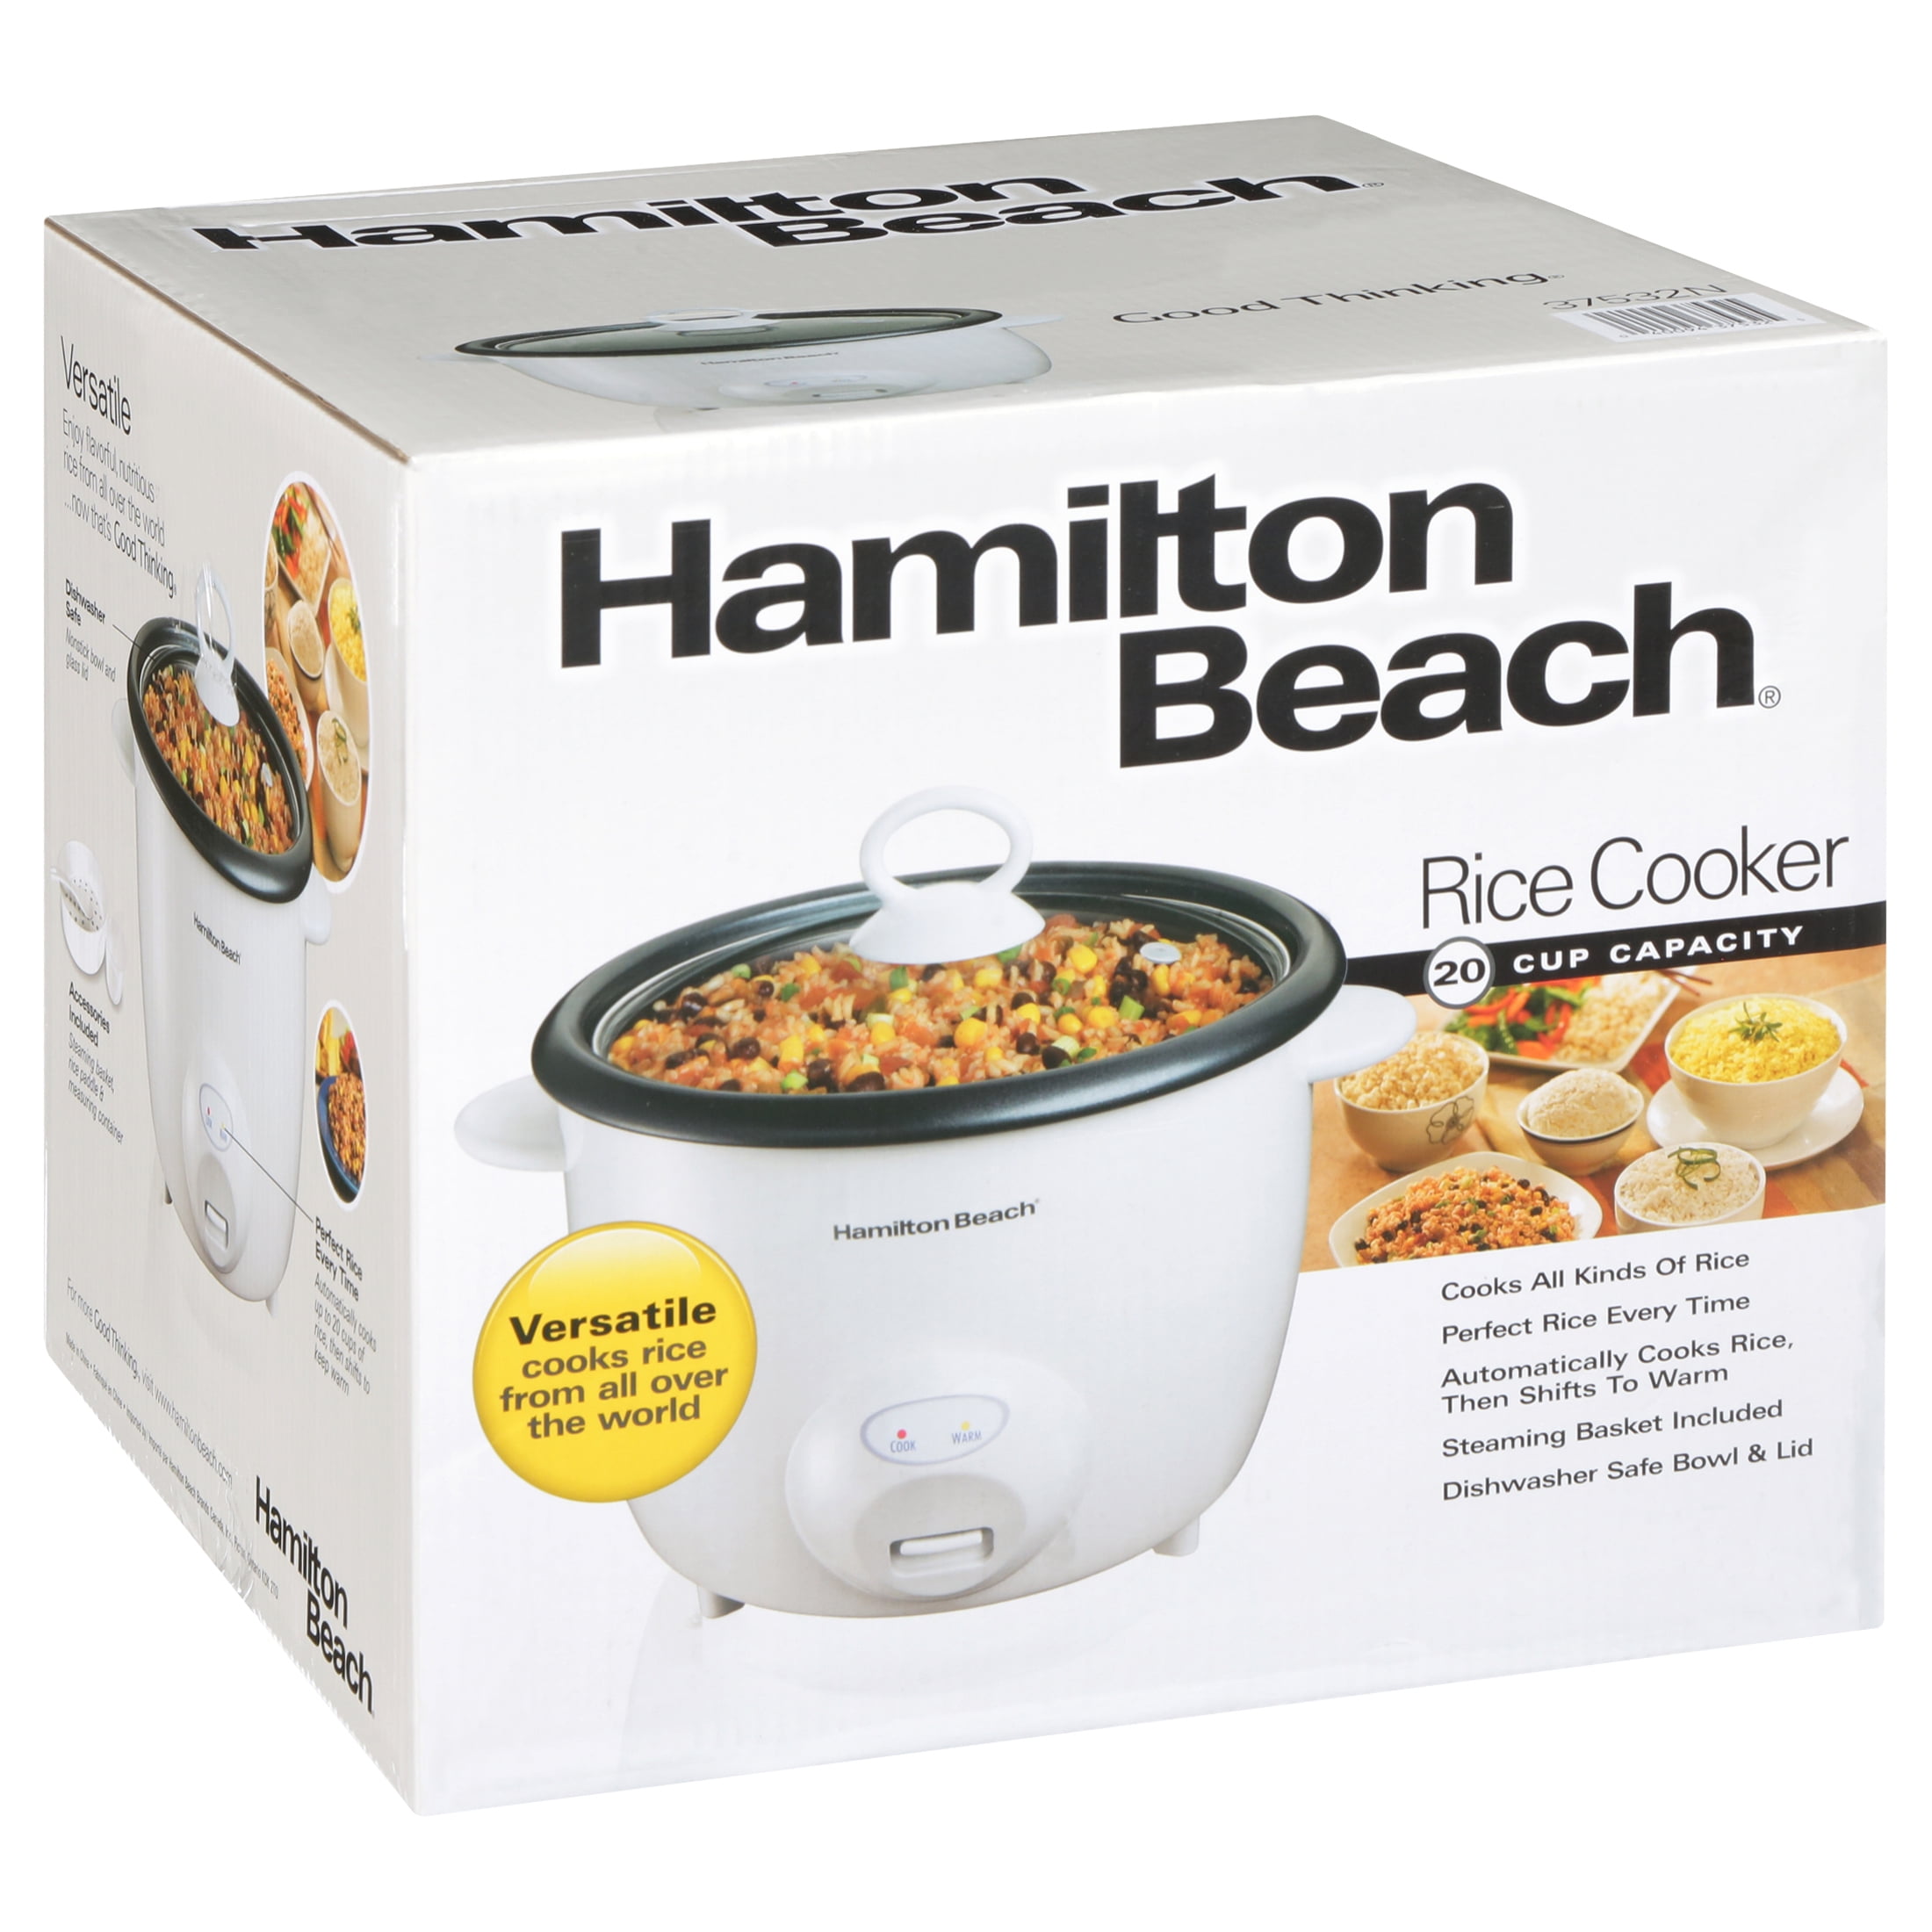 Hamilton Beach Ensemble Rice Cooker, 20 Cup Capacity